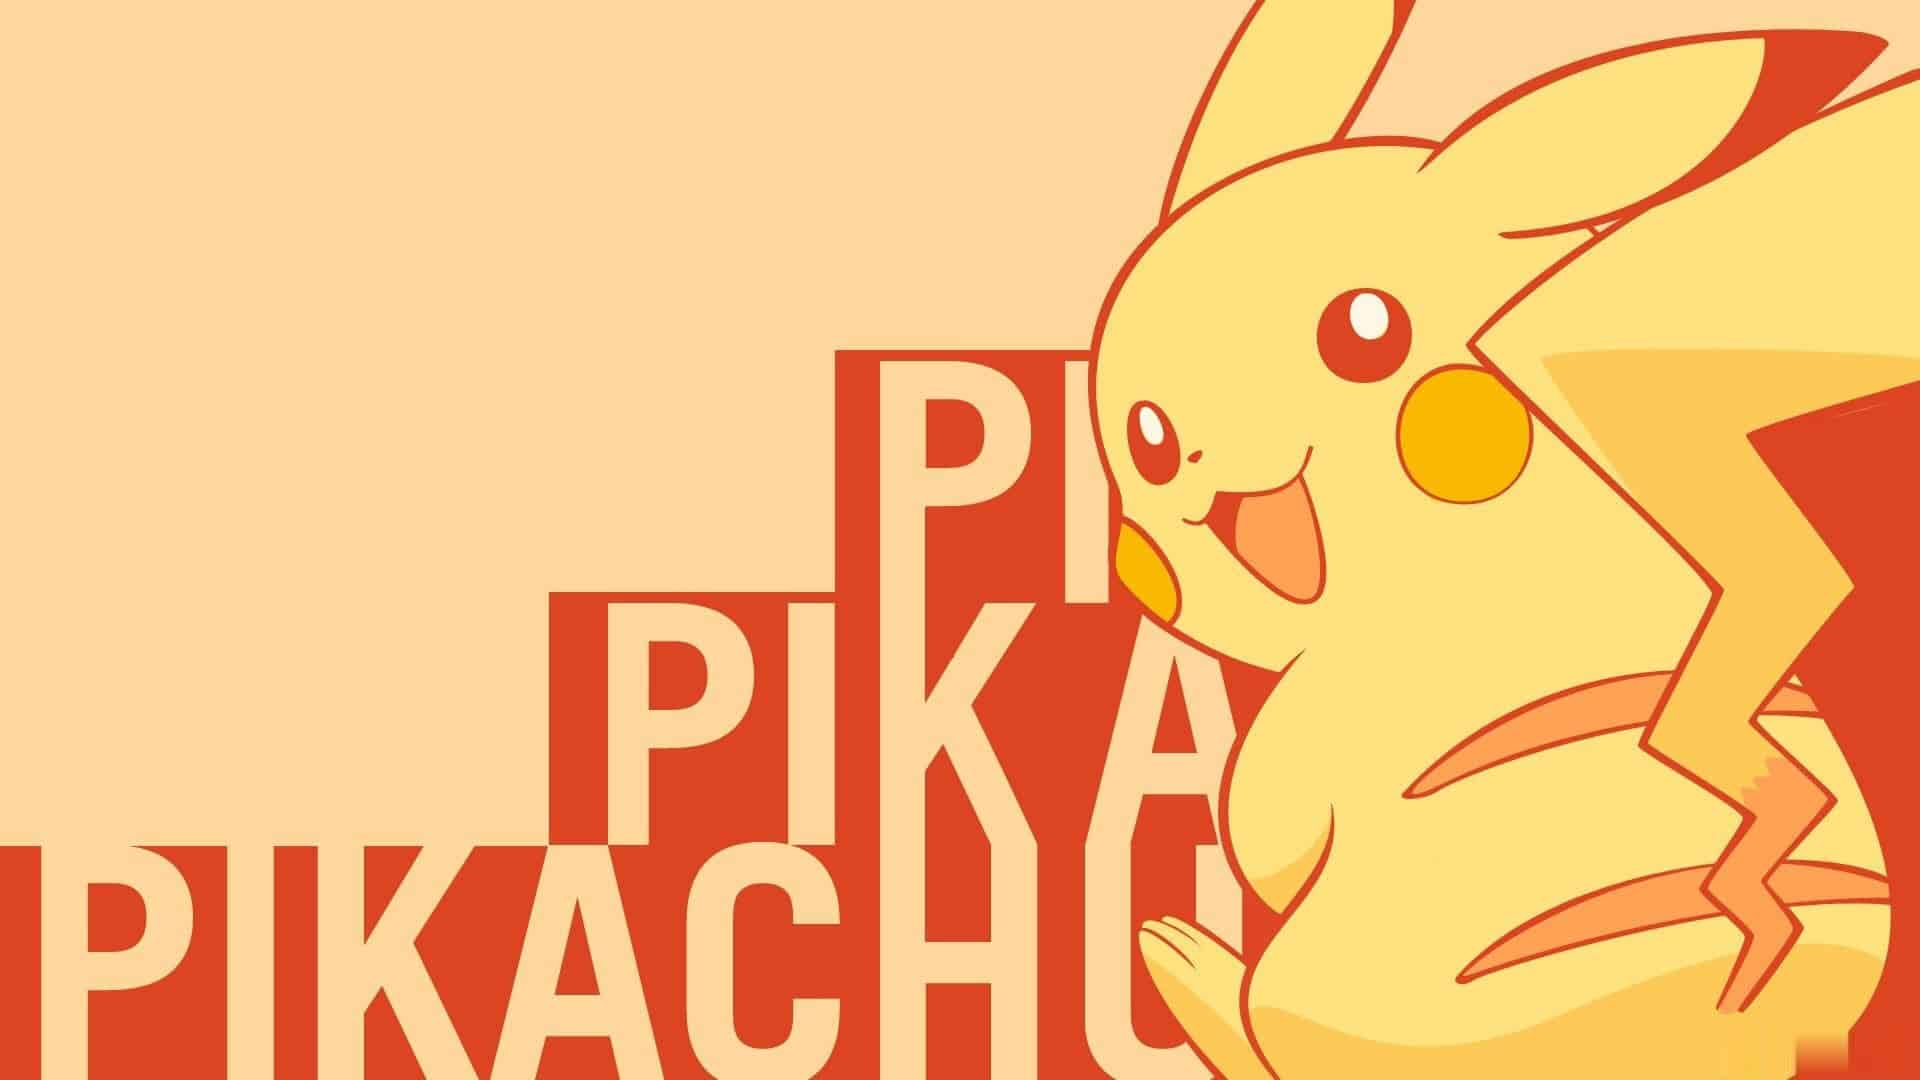 Hình nền Pikachu đẹp dễ thương nhất